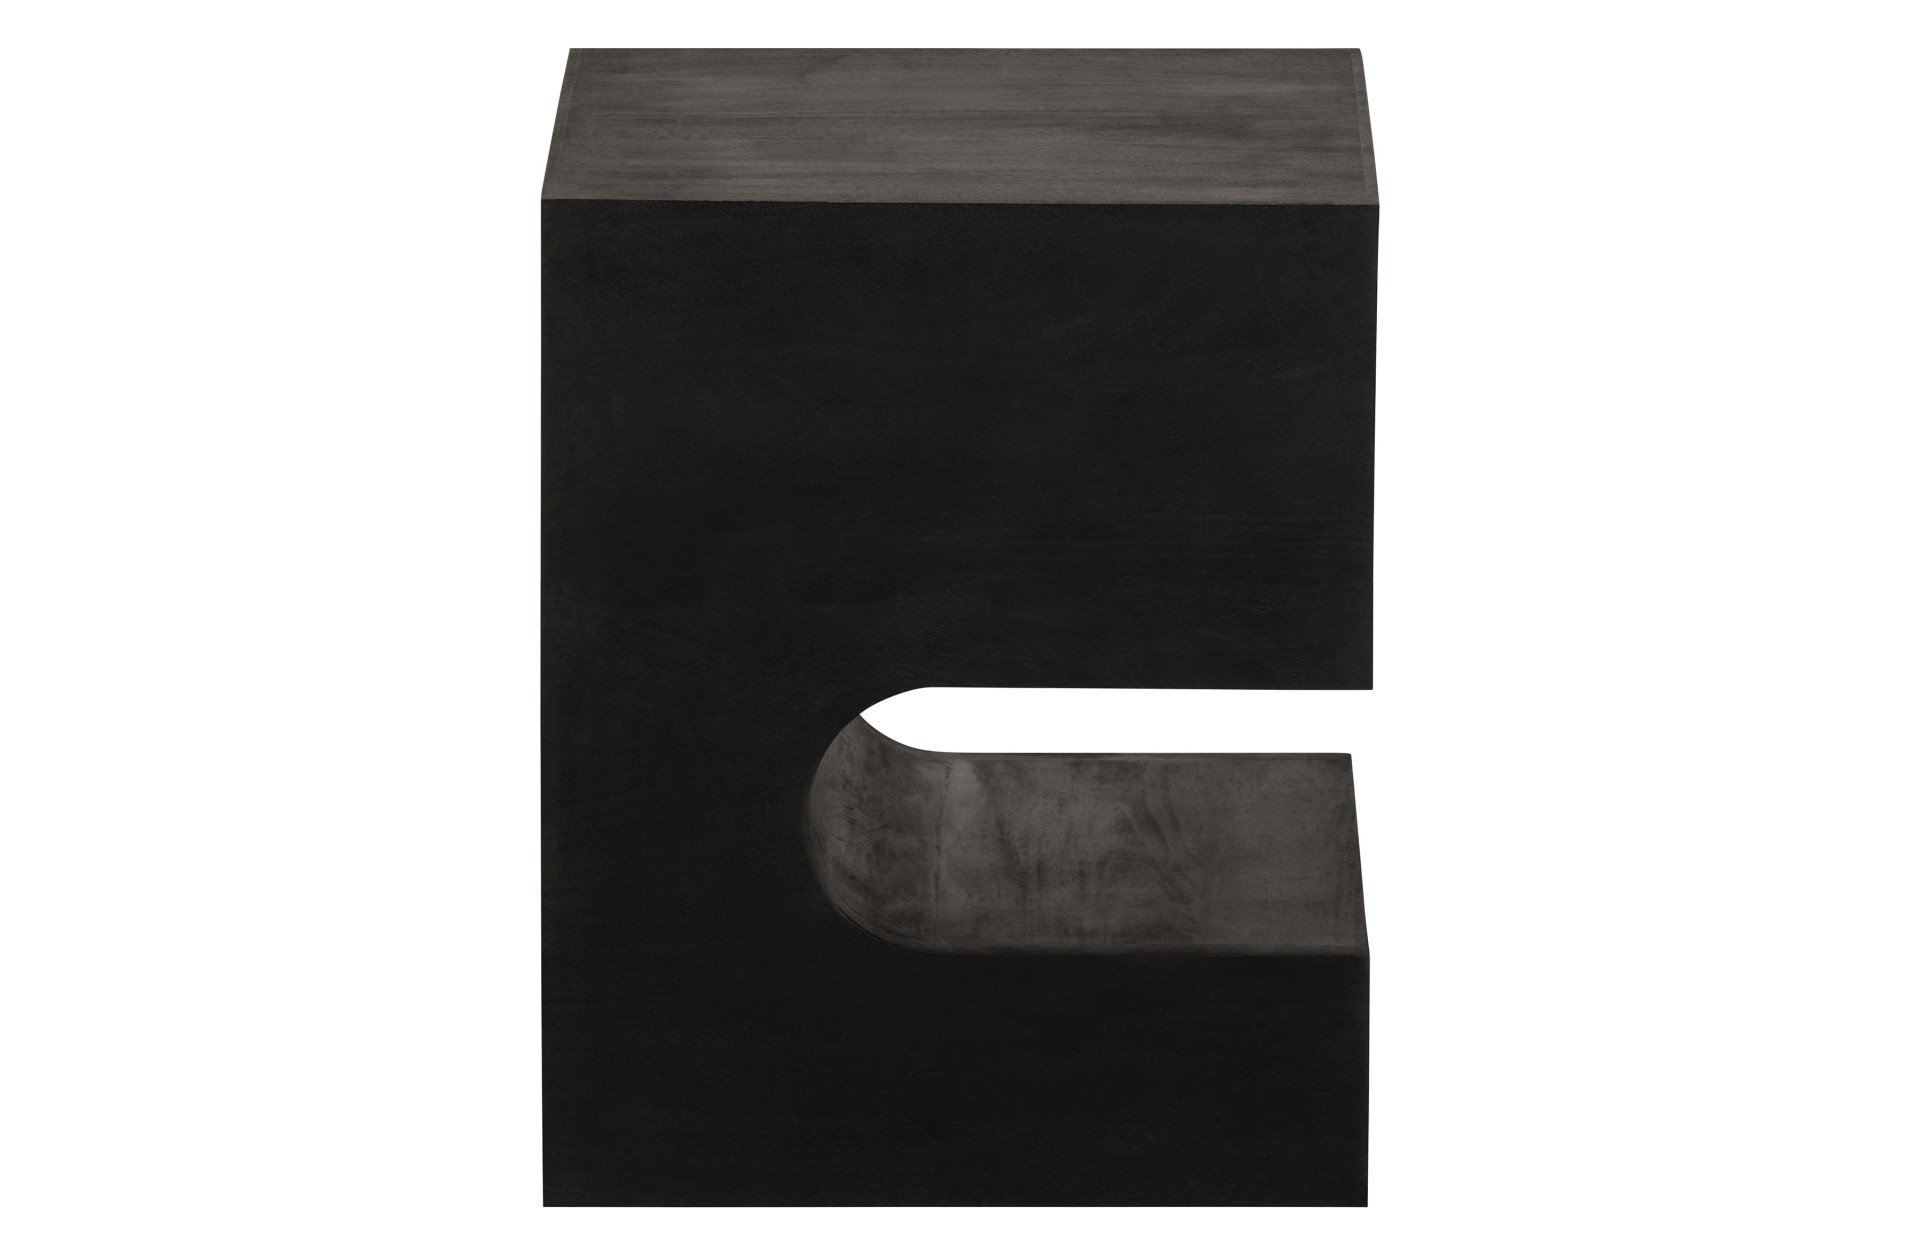 Der Beistelltisch Toma überzeugt mit seinem modernen Design. Gefertigt wurde er aus Mangoholz, welches einen schwarzen Farbton besitzt. Der Beistelltisch verfügt über einen Breite von 40 cm.